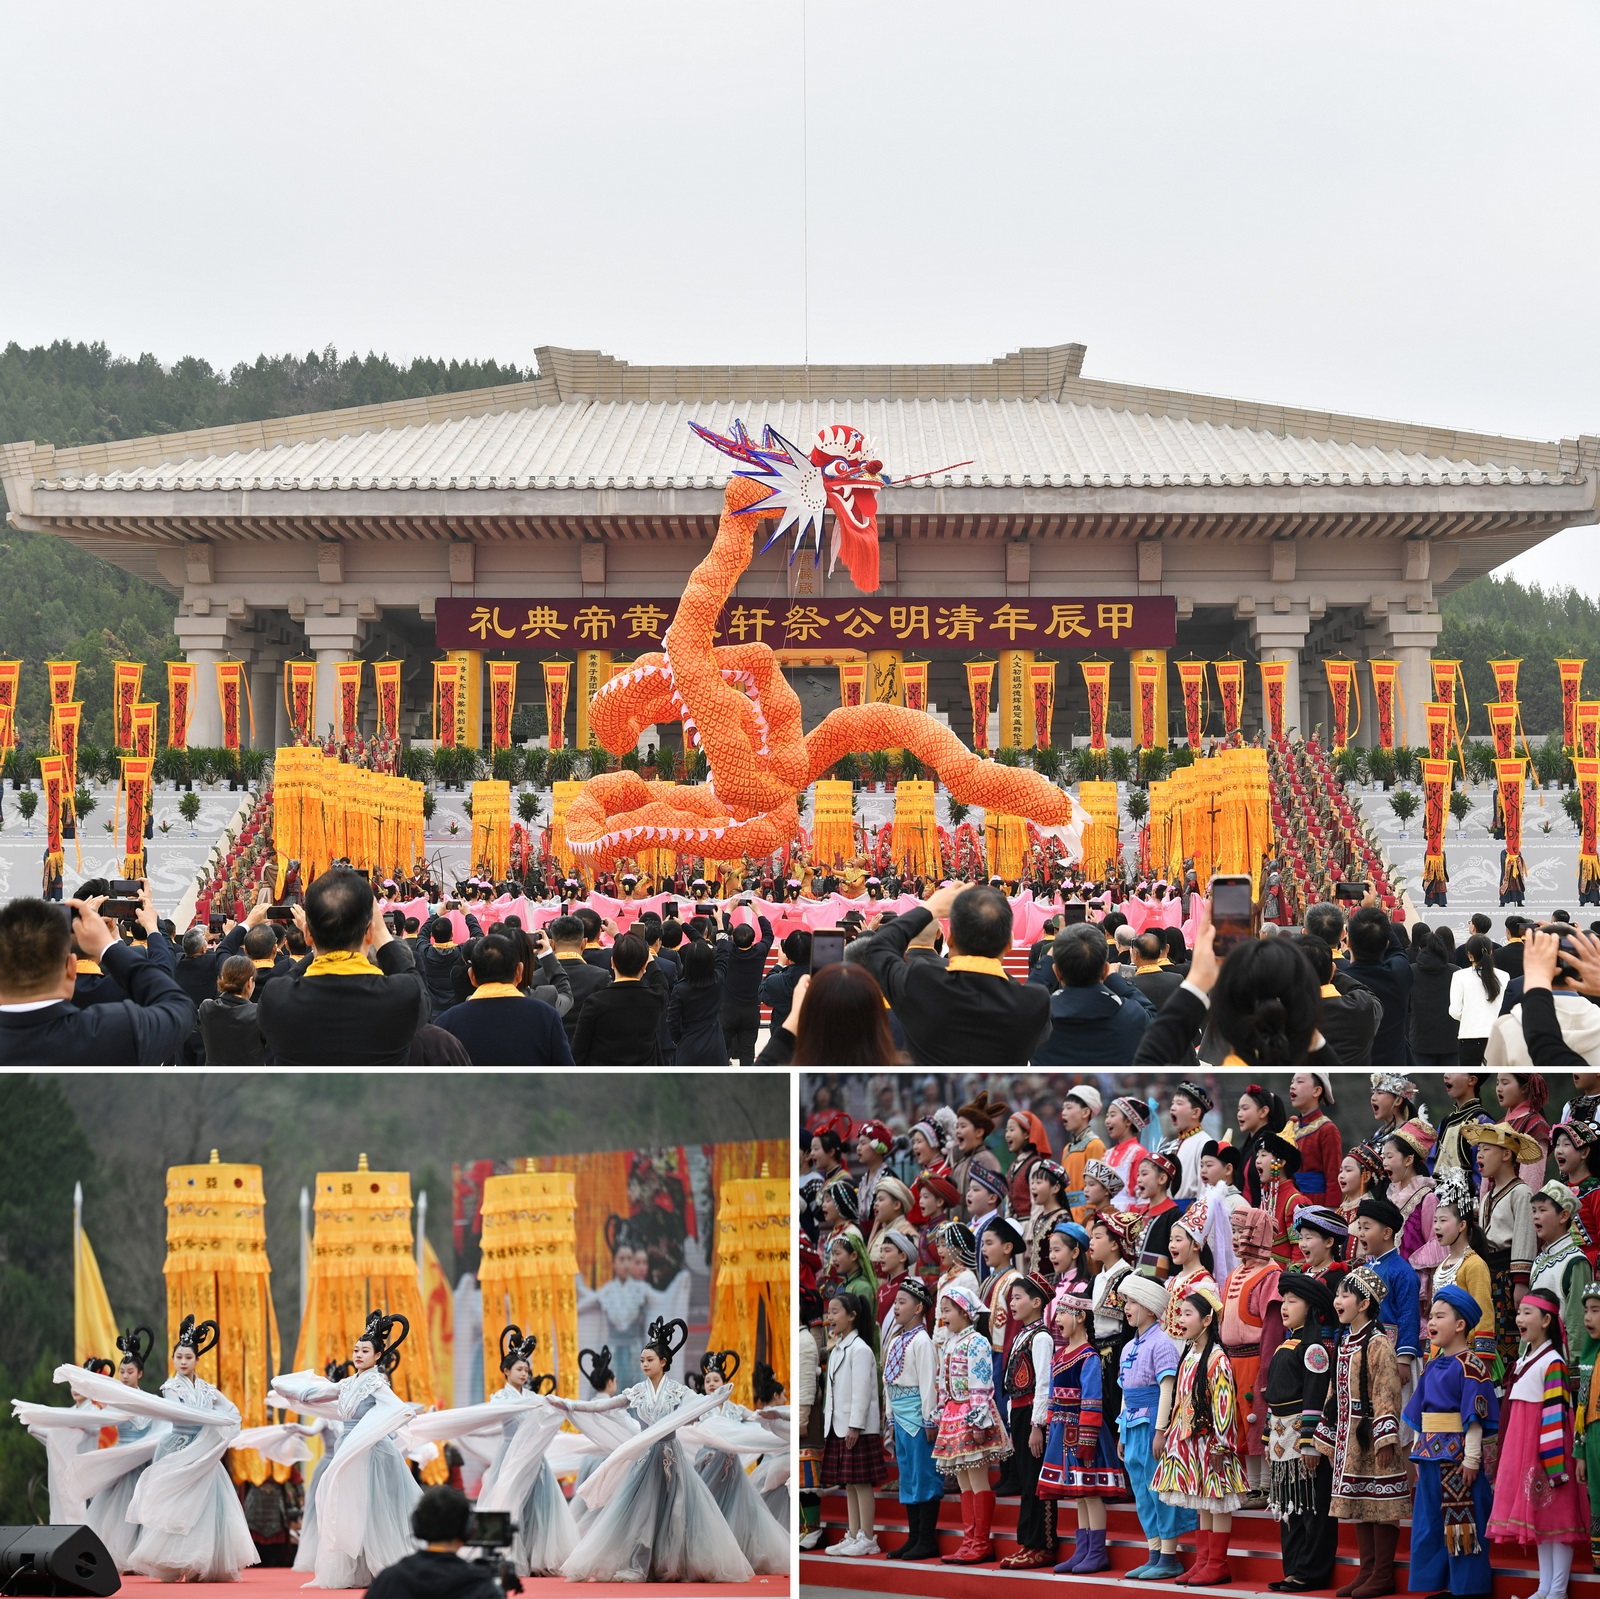 ข่าวภาษาอังกฤษ - Jiachen (2024) Qingming Festival Memorial Ceremony for the Yellow Emperor was held in Shaanxi Province